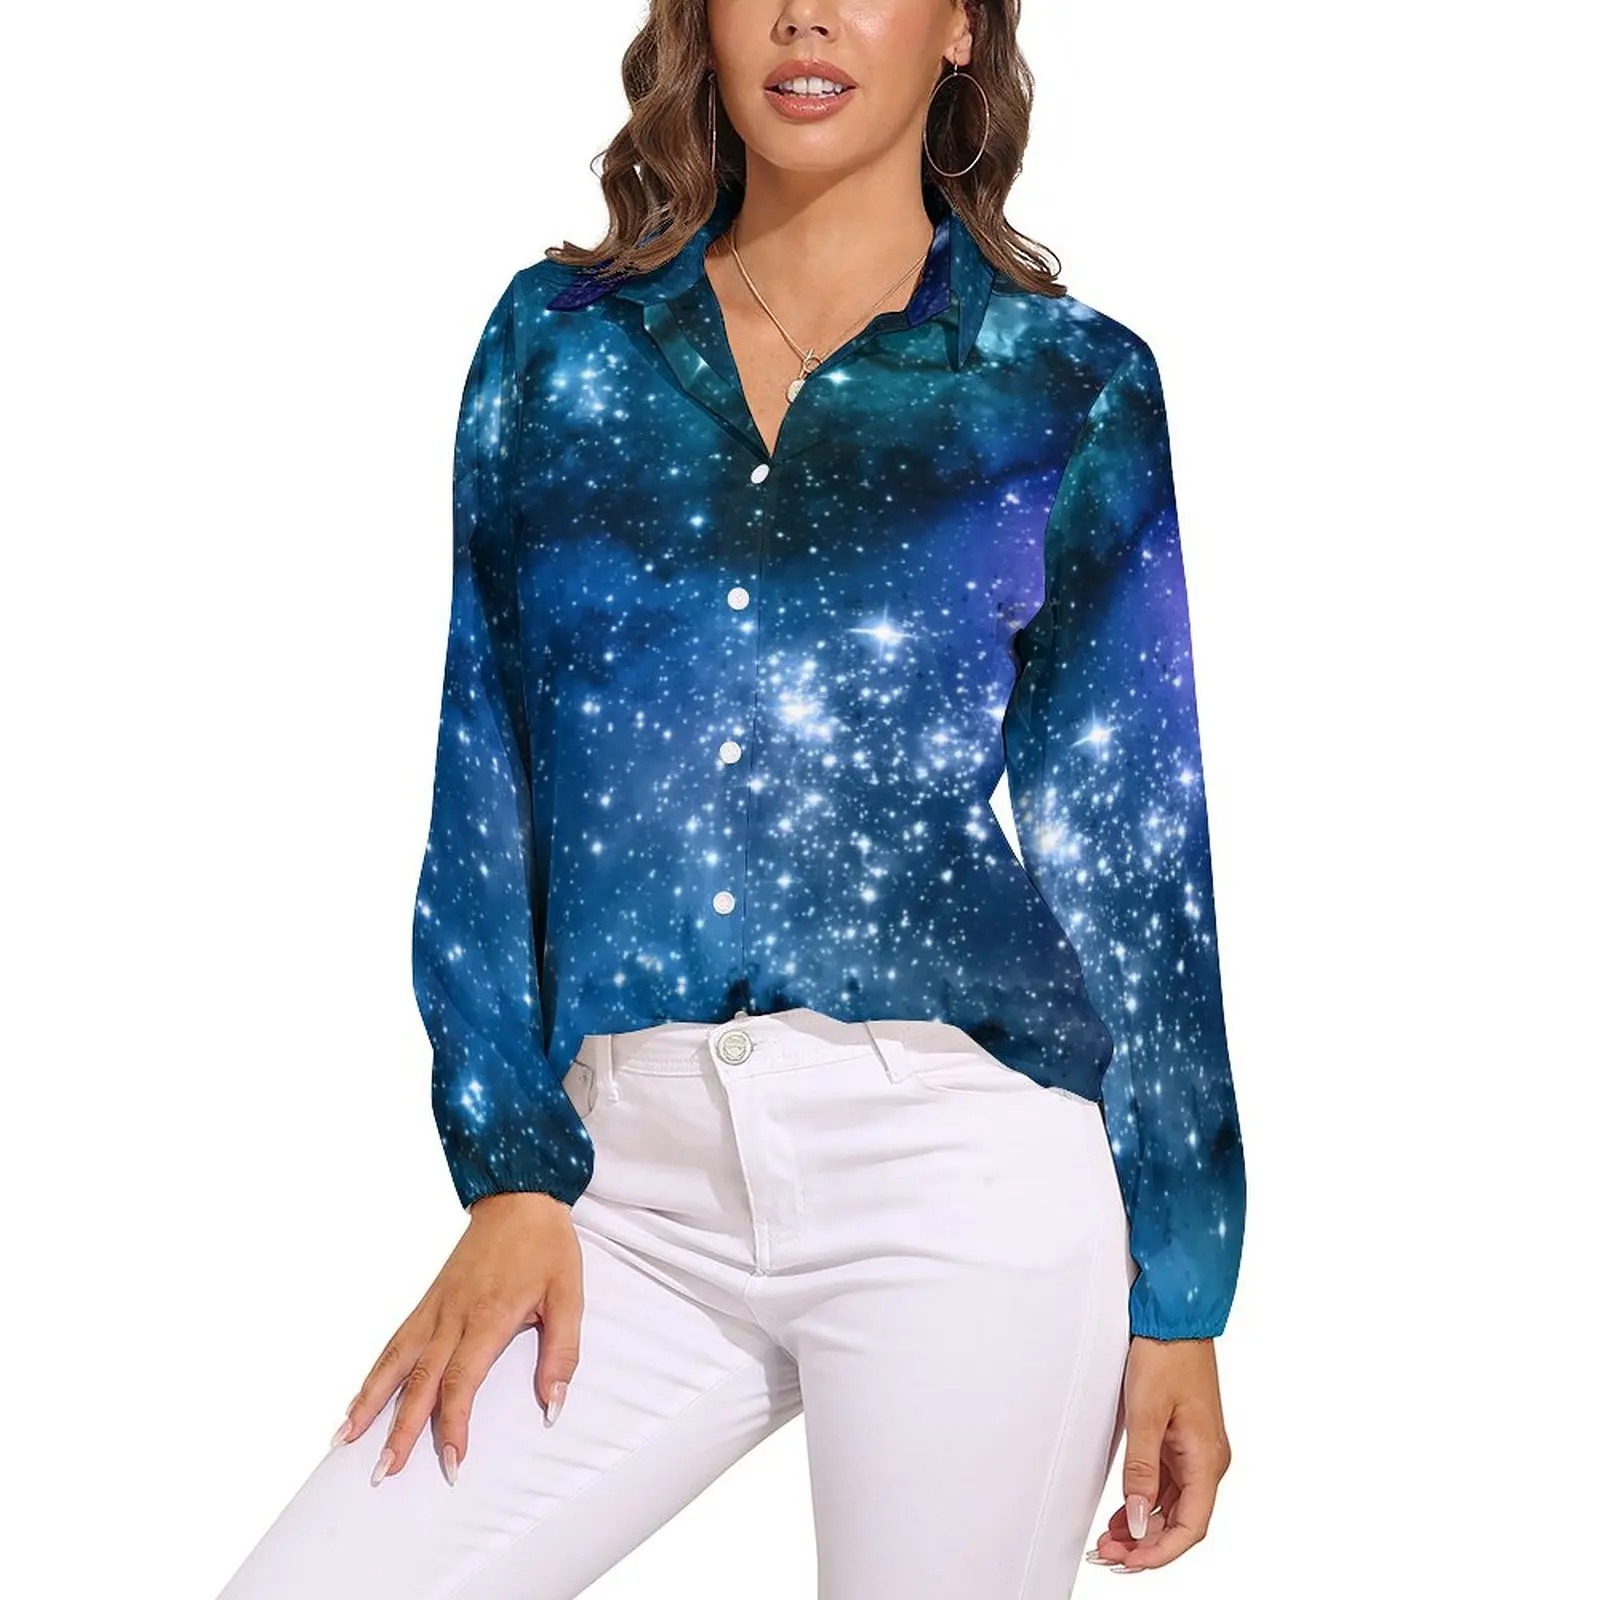 

Блузка для влюбленных Galaxy, блузка с длинным рукавом, звездное, космическое, голубое небо, в эстетике, Повседневная рубашка оверсайз, одежда с графическим принтом, подарок на день рождения